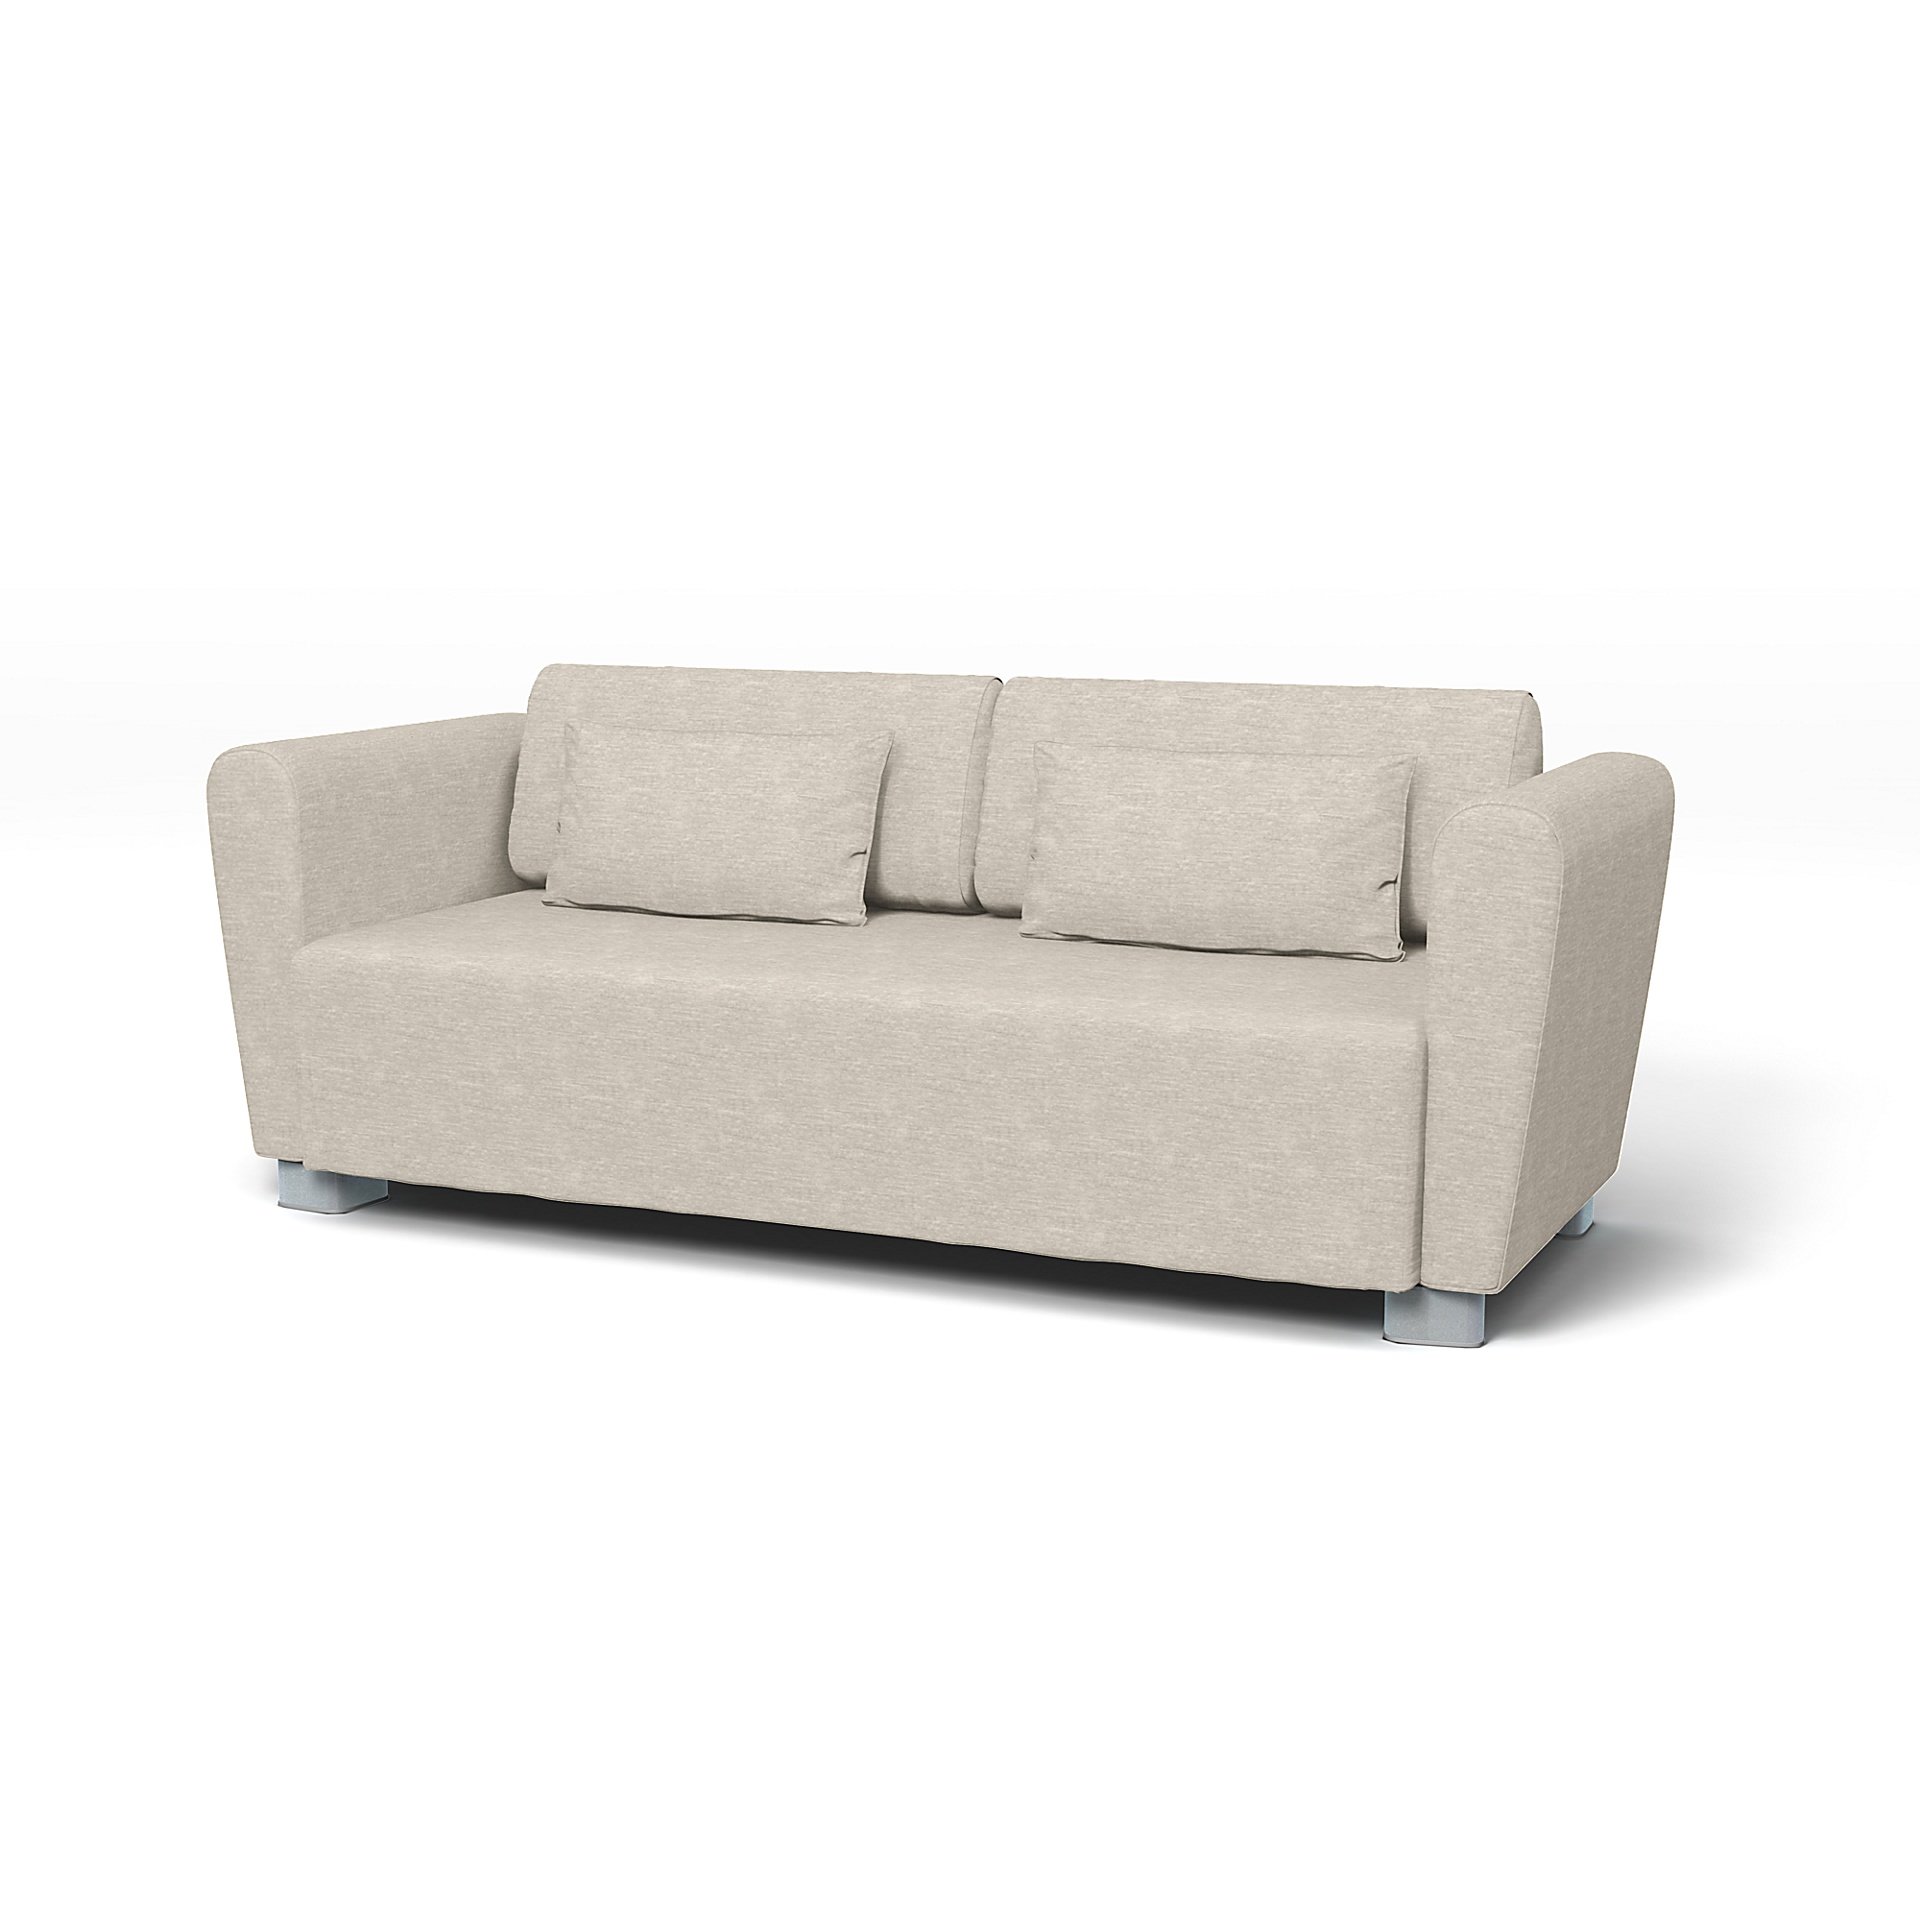 IKEA - Mysinge 2 Seater Sofa Cover, Natural White, Velvet - Bemz